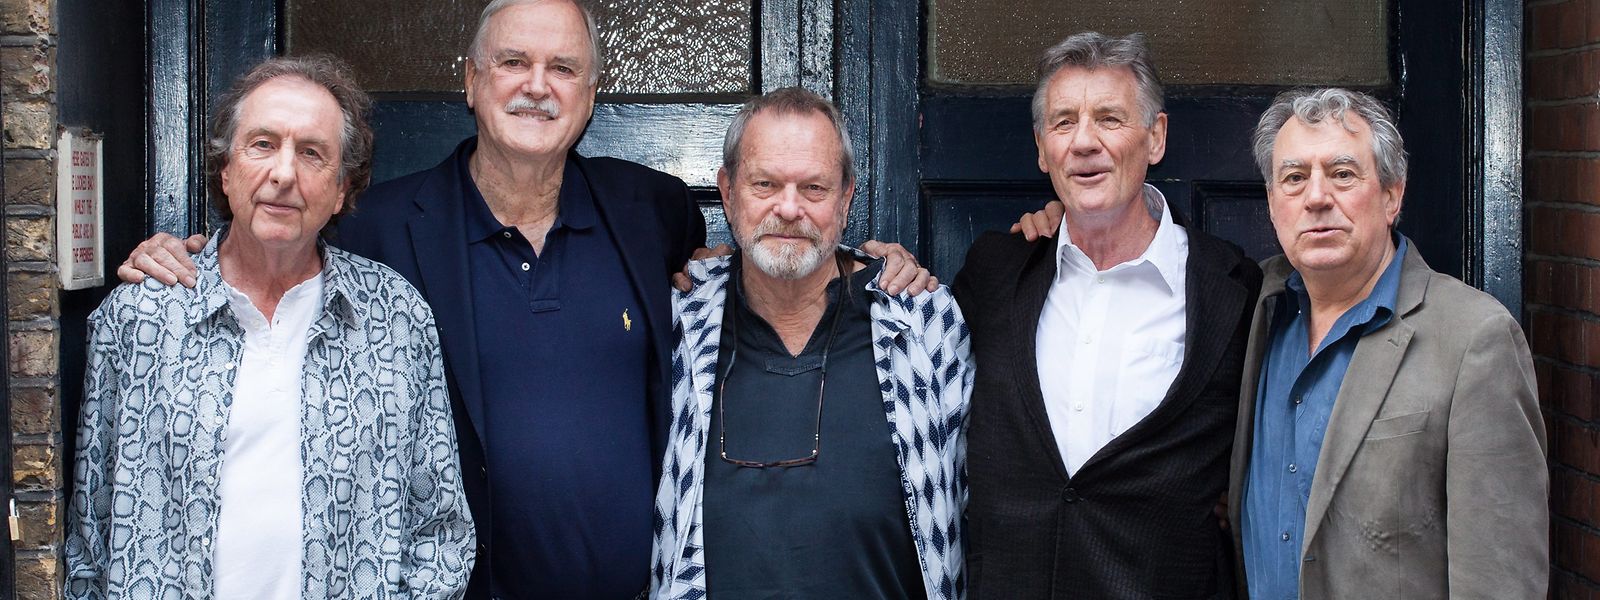 Geburtstagskind Eric Idle, John Cleese, Terry Gilliam, Michael Palin und Terry Jones (v.l.) waren zusammen mit dem 1989 verstorbenen Graham Chapman Monty Python. Jones starb 2020. 